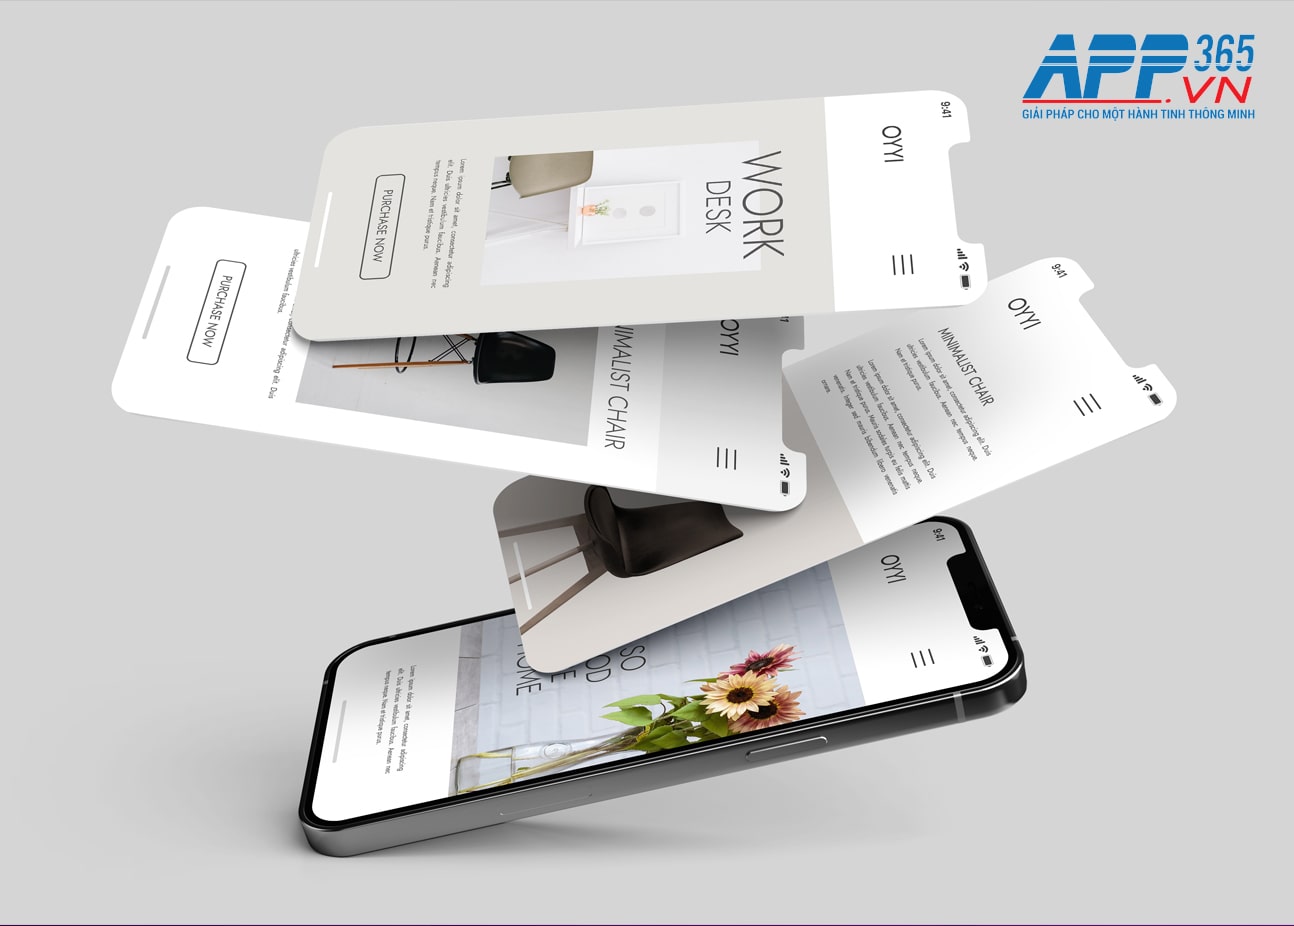 APP365 - Dịch vụ thiết kế App chuyên nghiệp theo yêu cầu